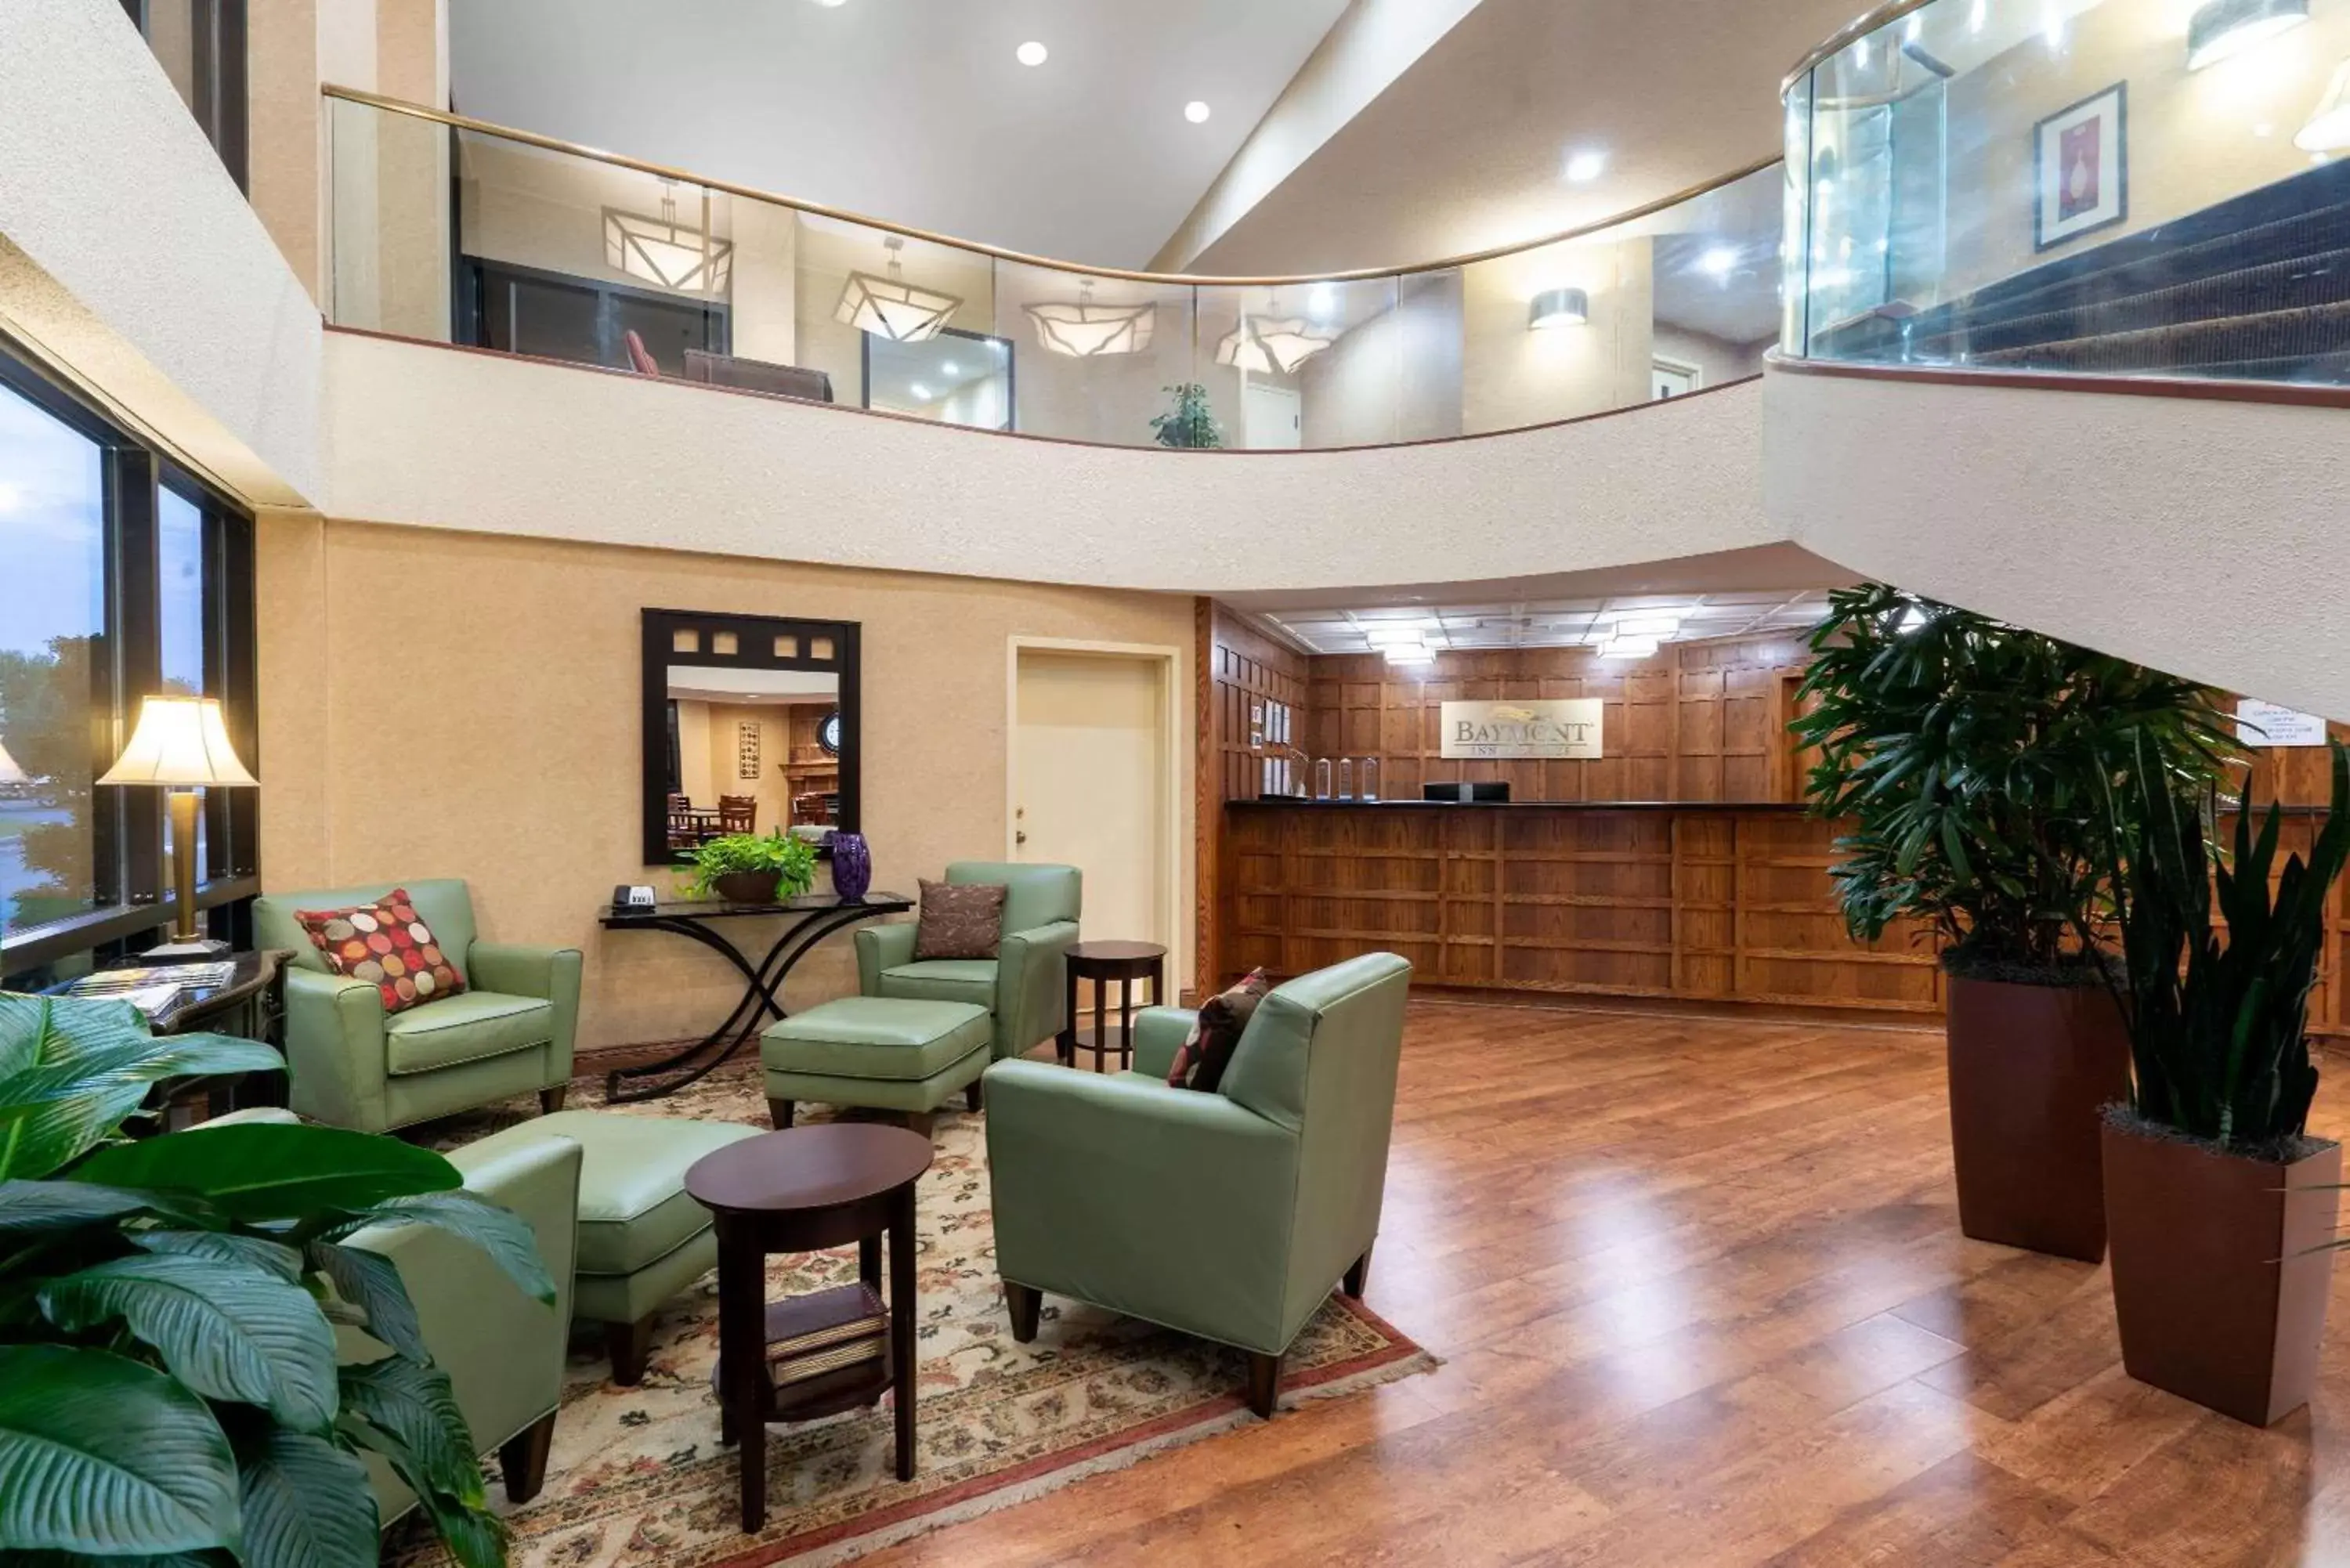 Lobby or reception, Lobby/Reception in Baymont by Wyndham Knoxville/Cedar Bluff